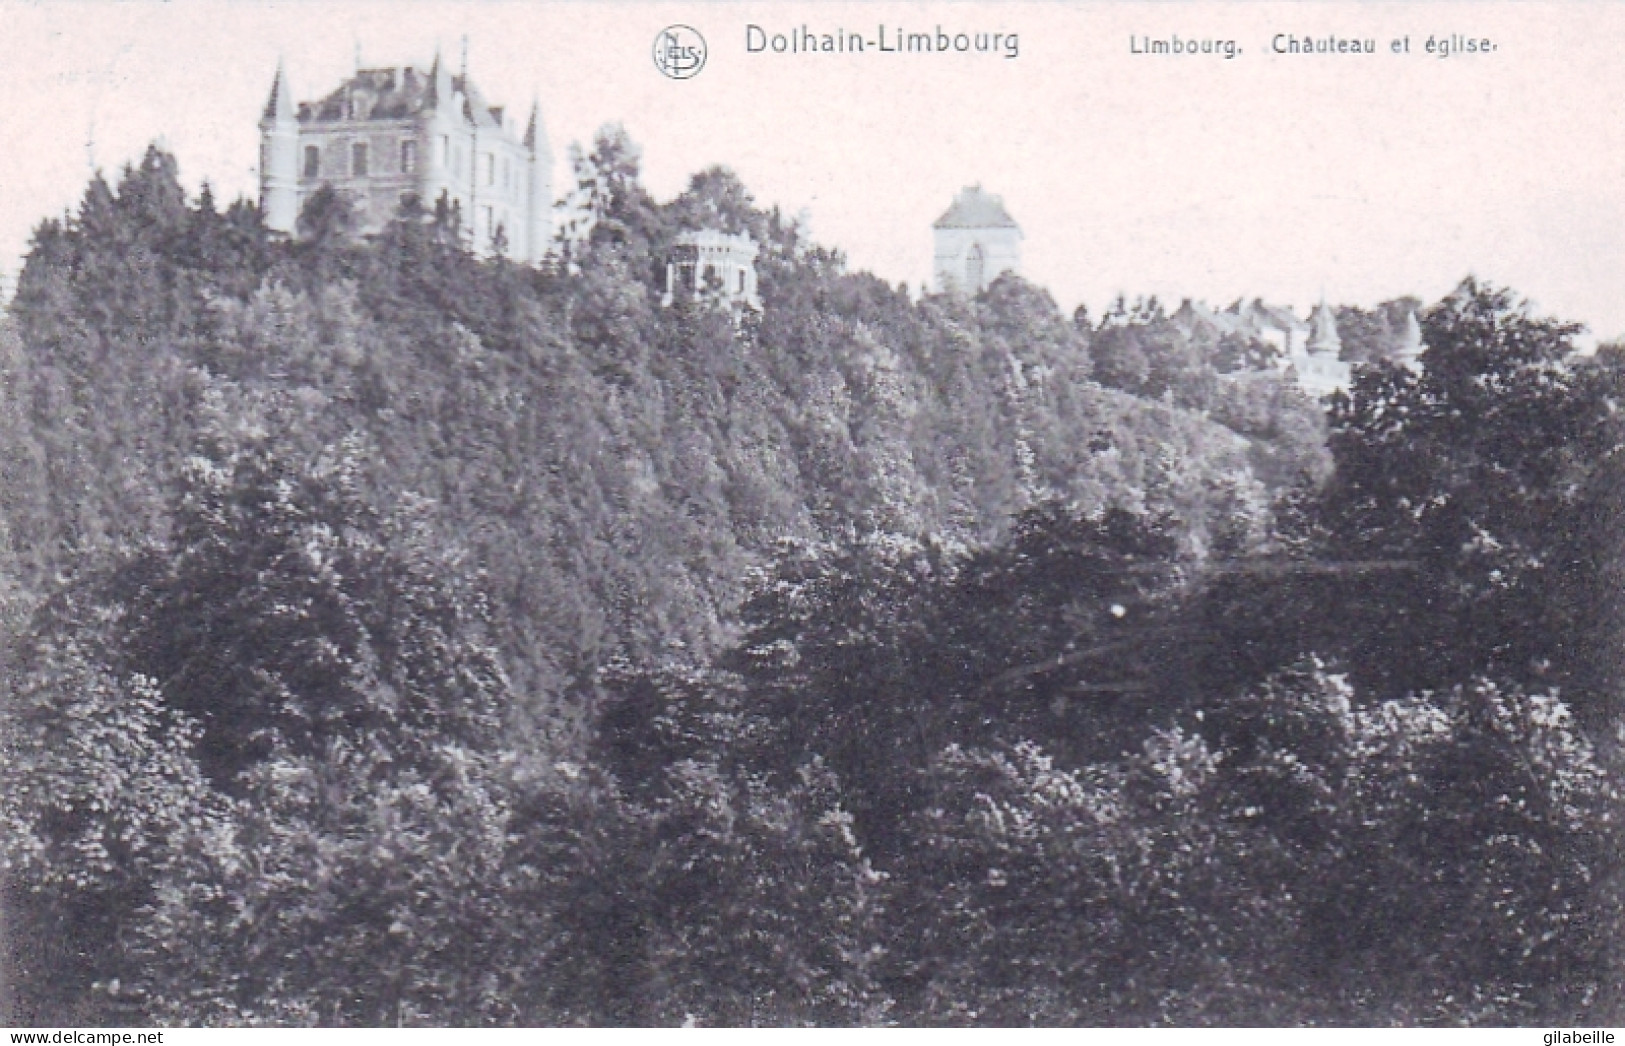 DOLHAIN - LIMBOURG - Limbourg - Chateau Et Eglise - Limburg